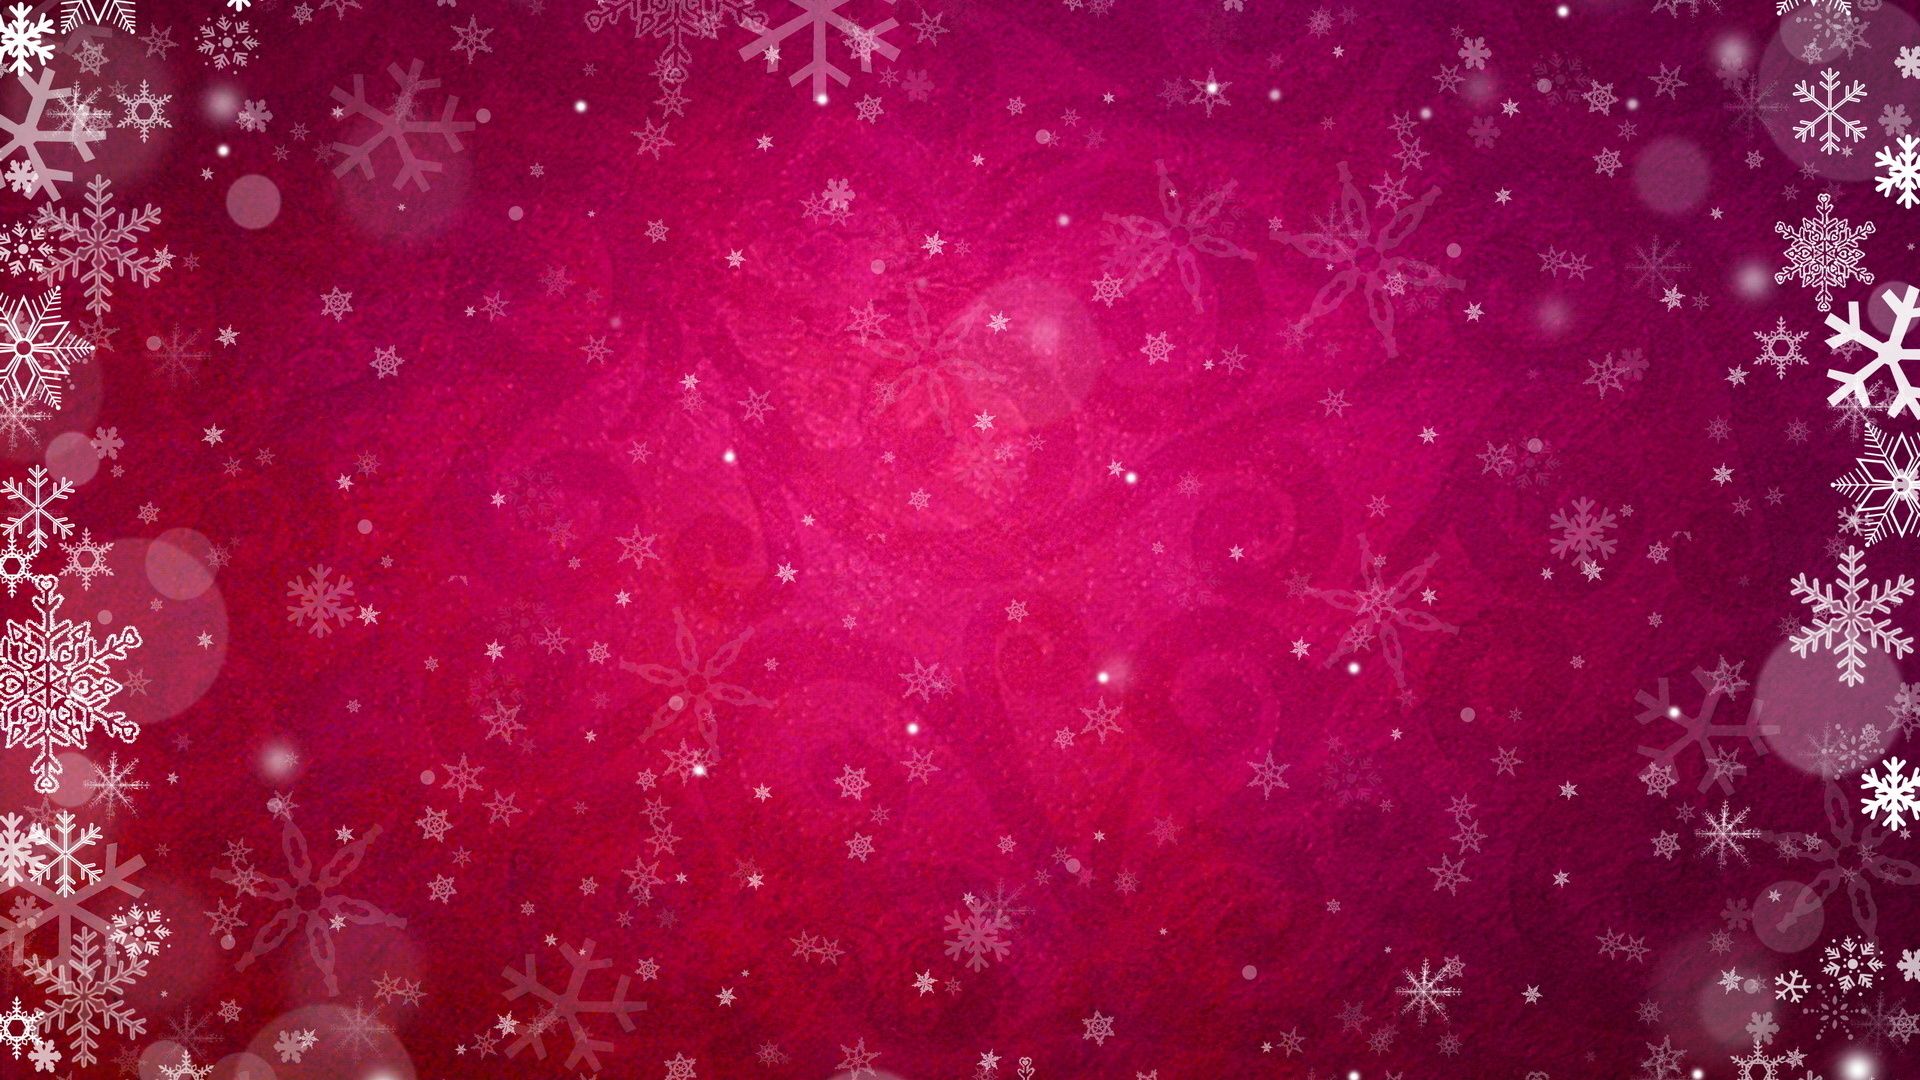 Pink snowflakes